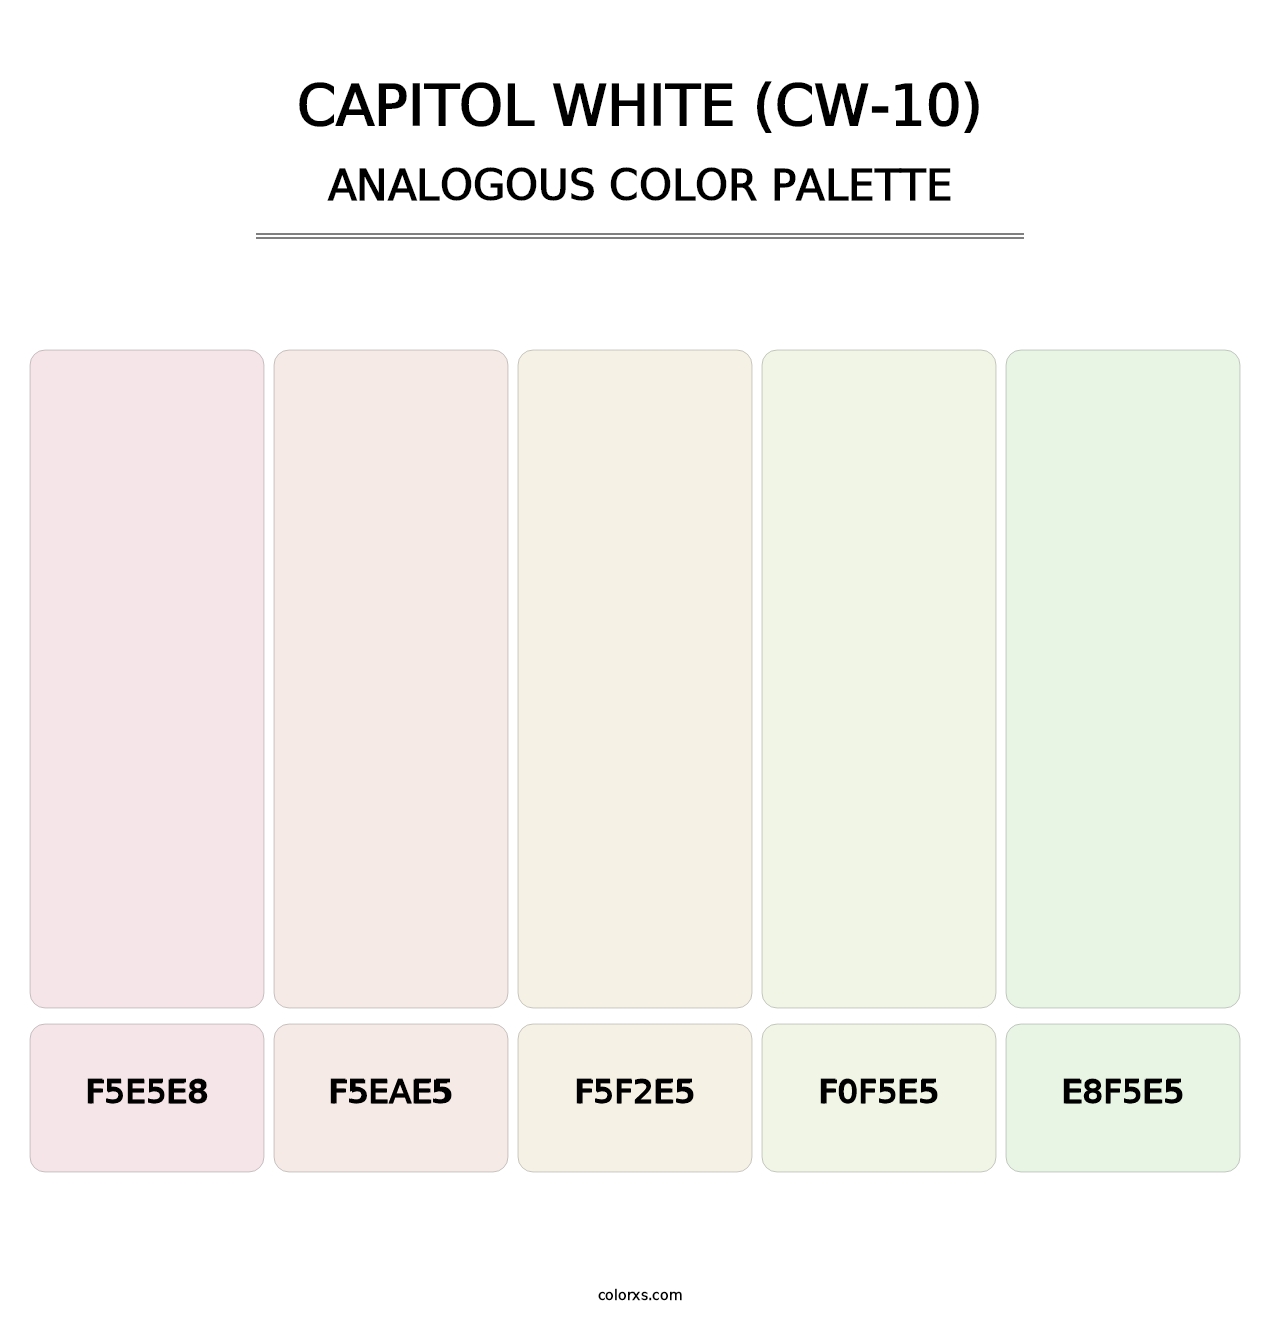 Capitol White (CW-10) - Analogous Color Palette